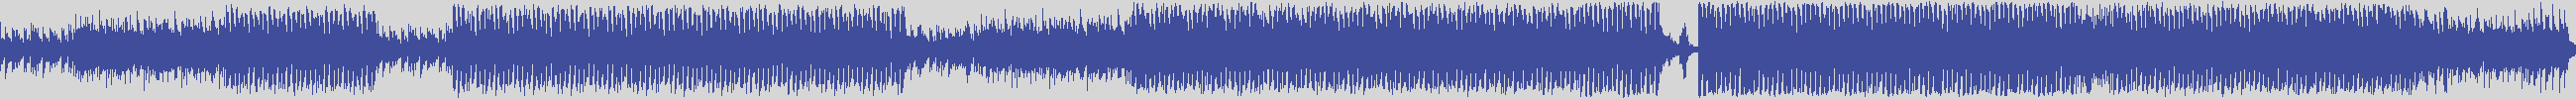 nf_boyz_records [NFY044] Surrogate Wanker - Lavender of the Parental [Original Mix] audio wave form